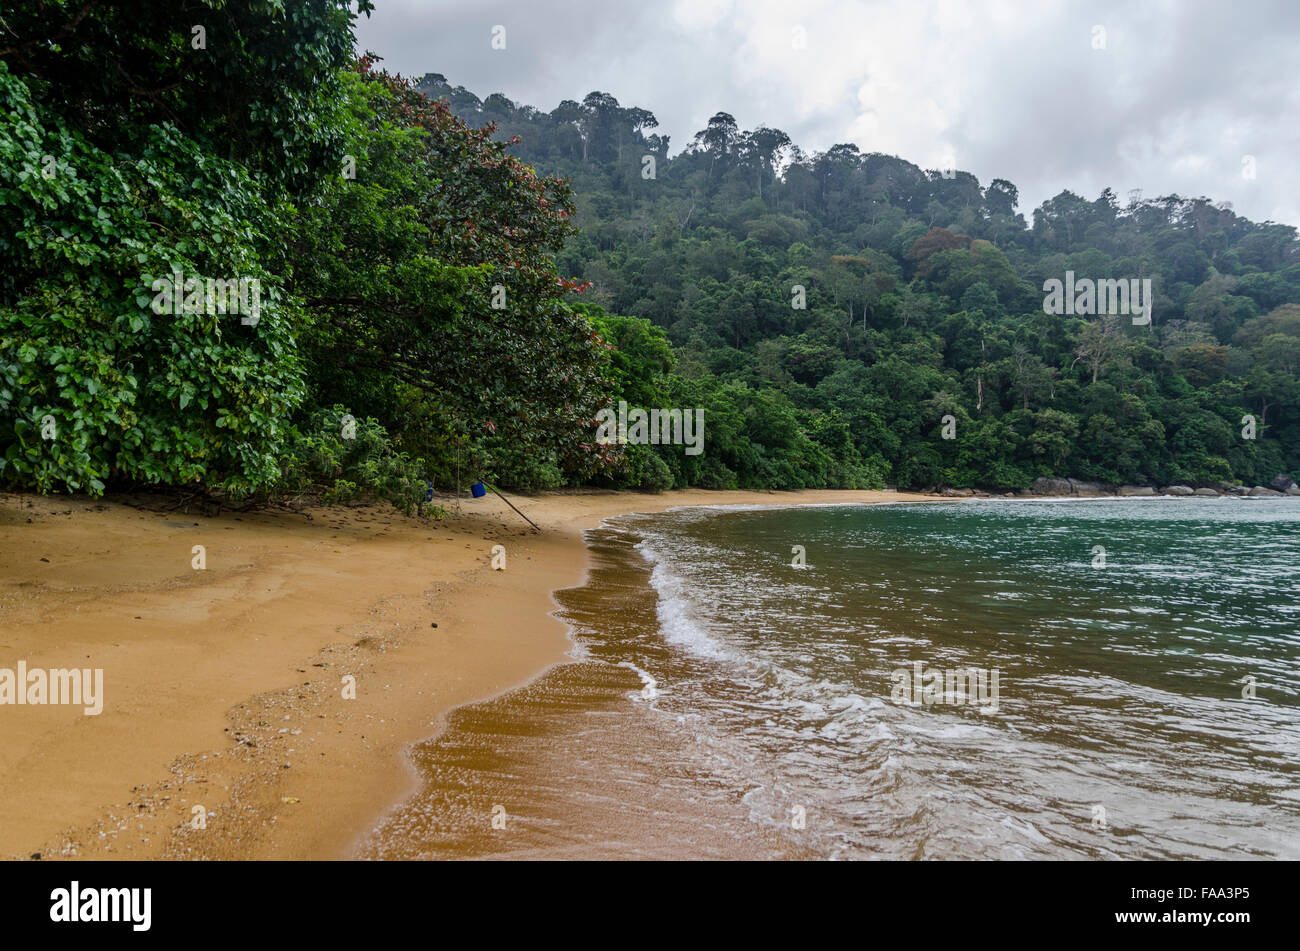 Beach in Tioman Island in Malaysia Stock Photo